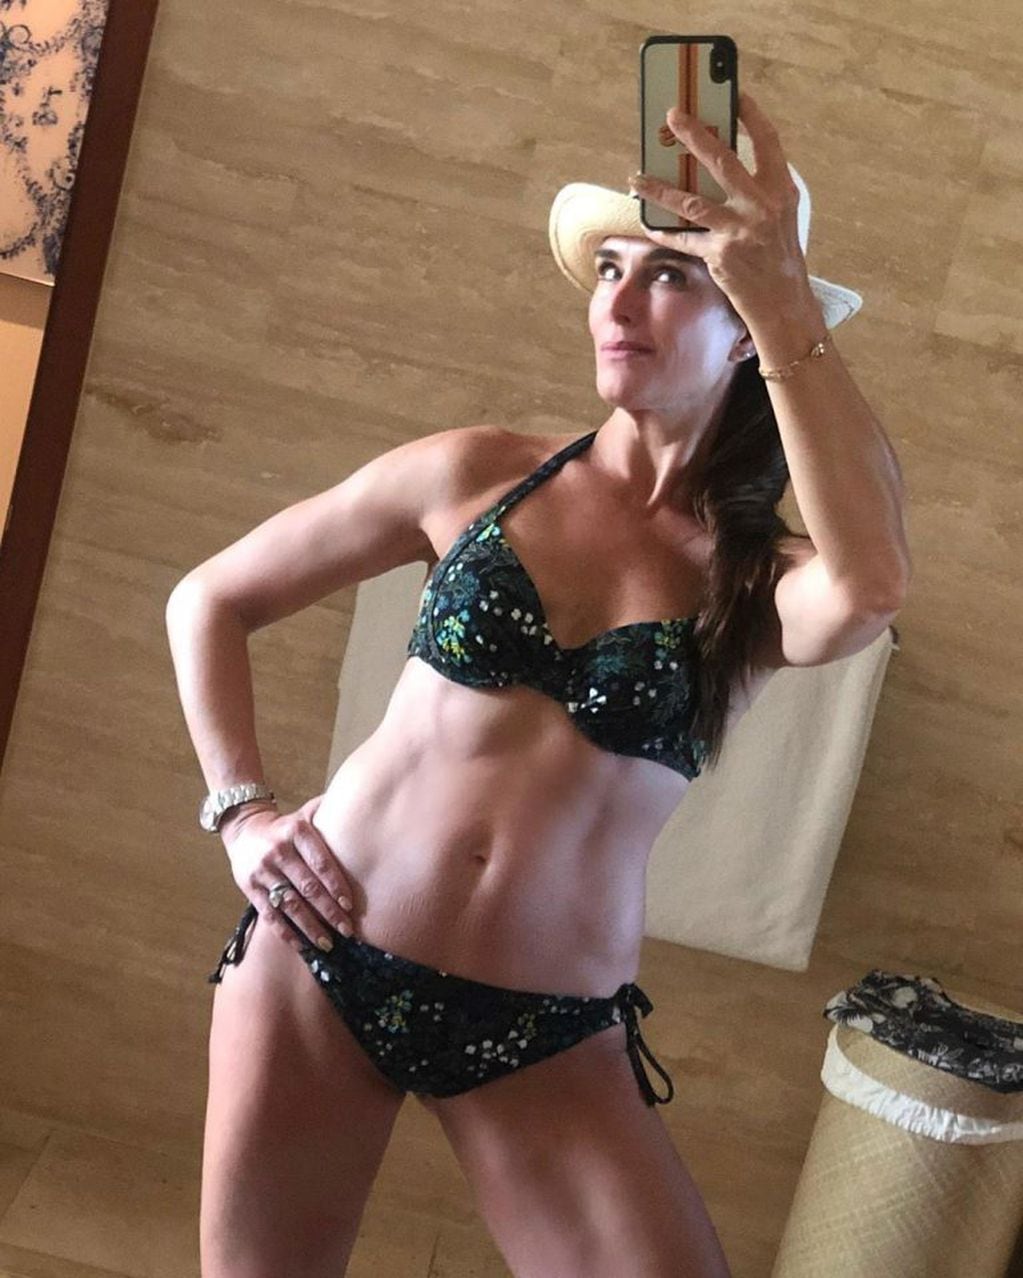 Brooke Shields es líder de la campaña "Trajes de baño para todos" que propone sentirse bien con el cuerpo que cada uno tiene (Foto: Instagram/ @brookeshields)